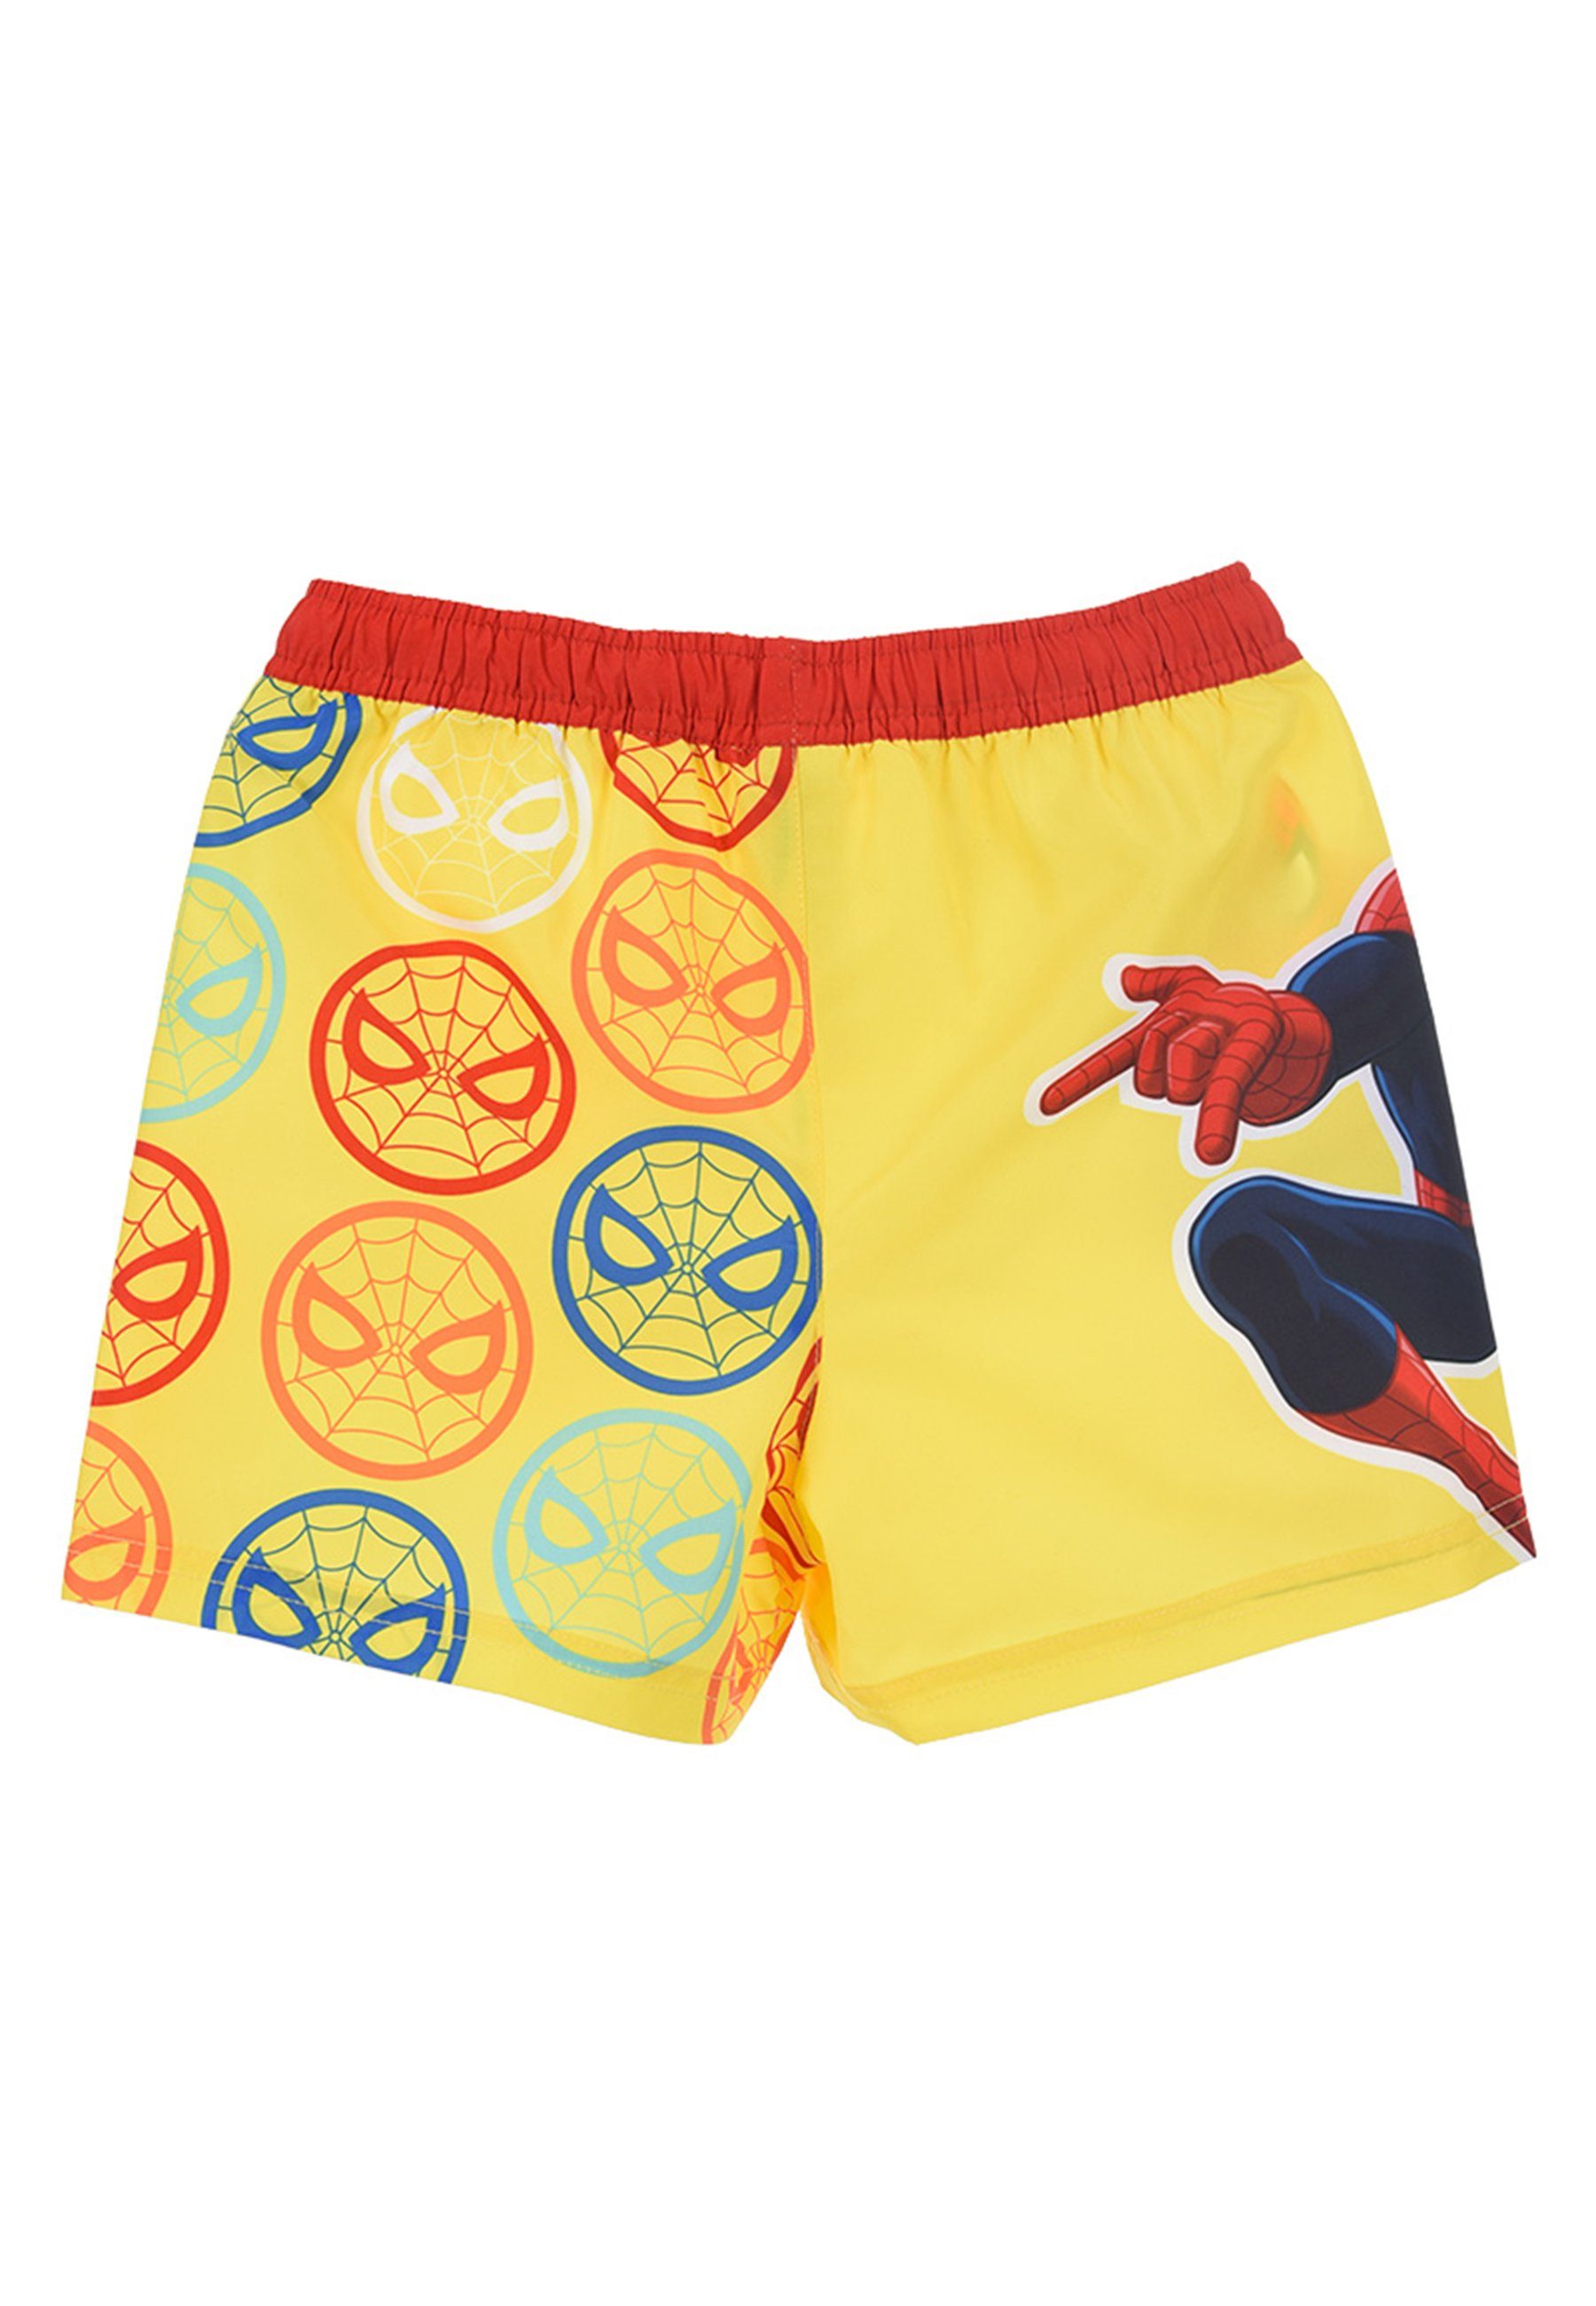 Spiderman Badeshorts Badehose Bermuda-Shorts Jungen Marvel Badepants Gelb Kinder